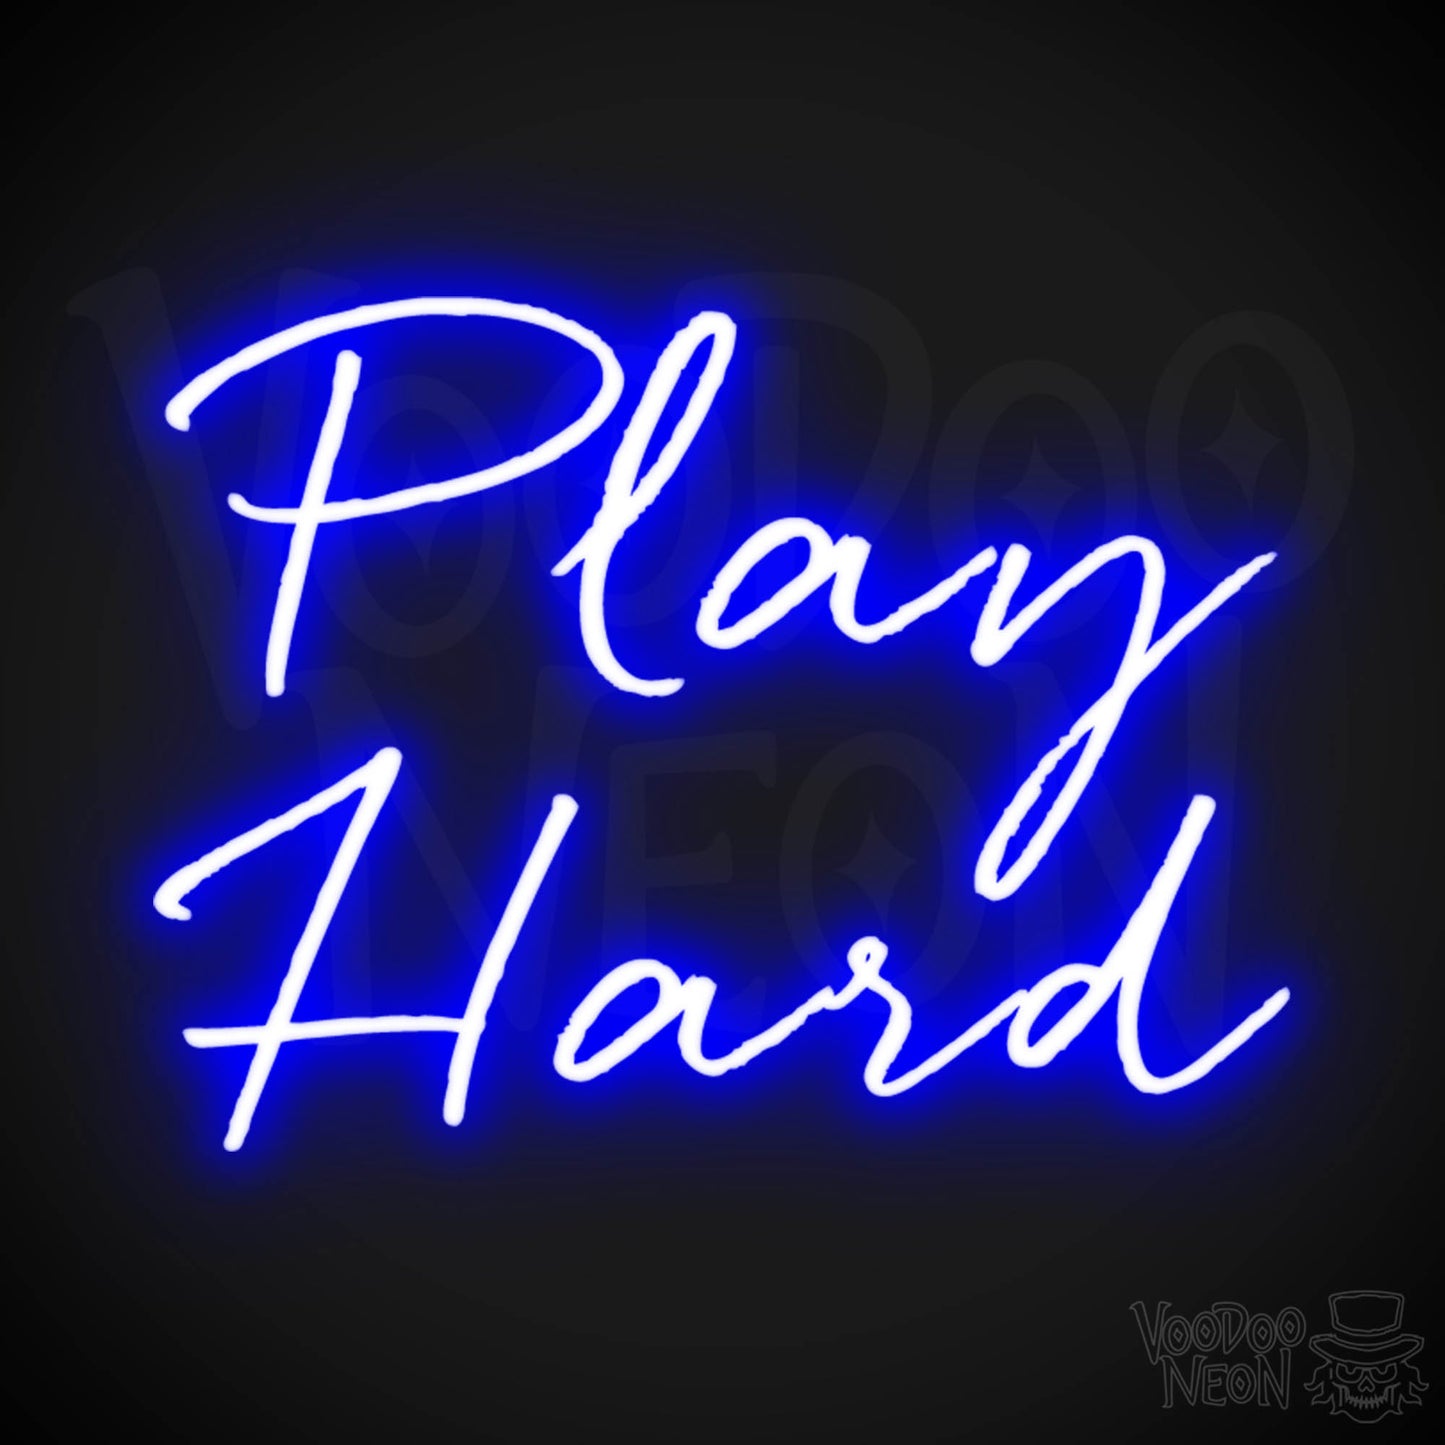 Play Hard Neon Sign - Neon Play Hard Sign - Play Hard LED Sign - Color Dark Blue